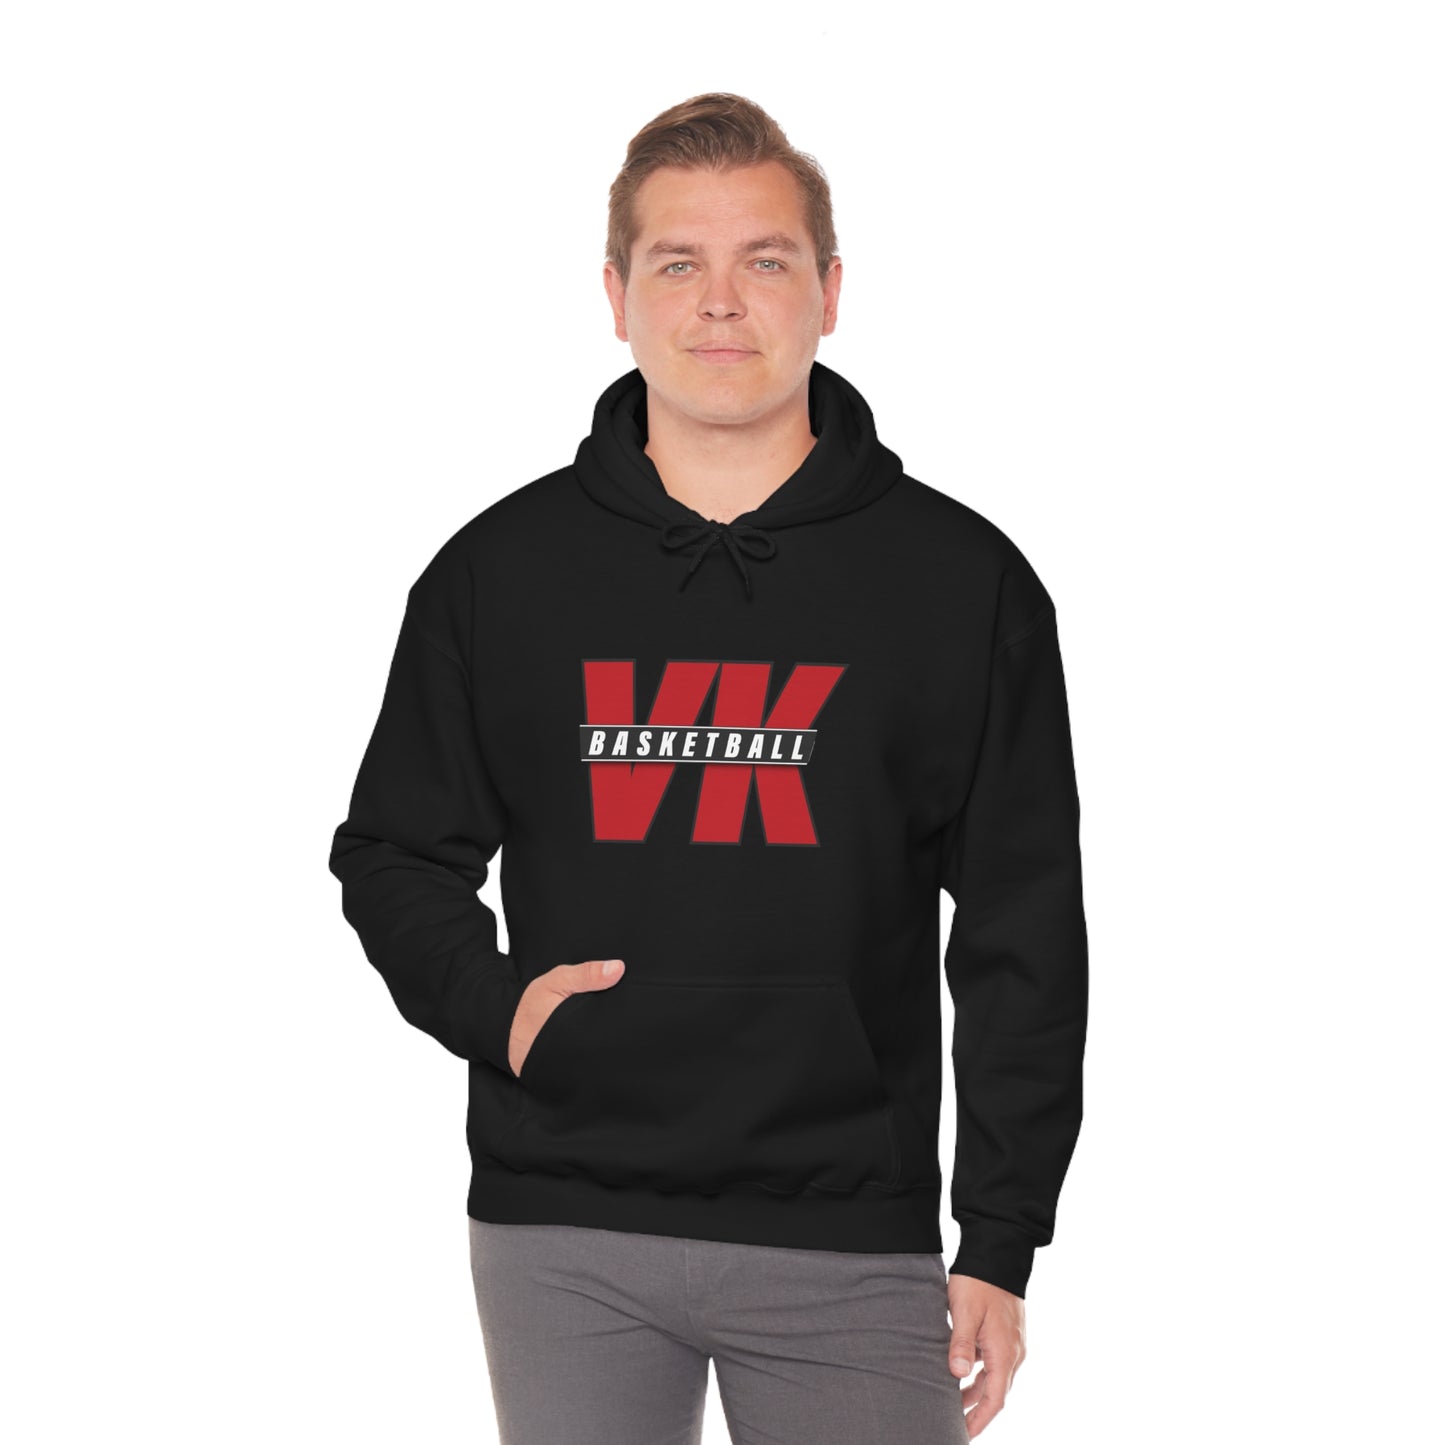 VK Basketball Unisex Hooded Sweatshirt